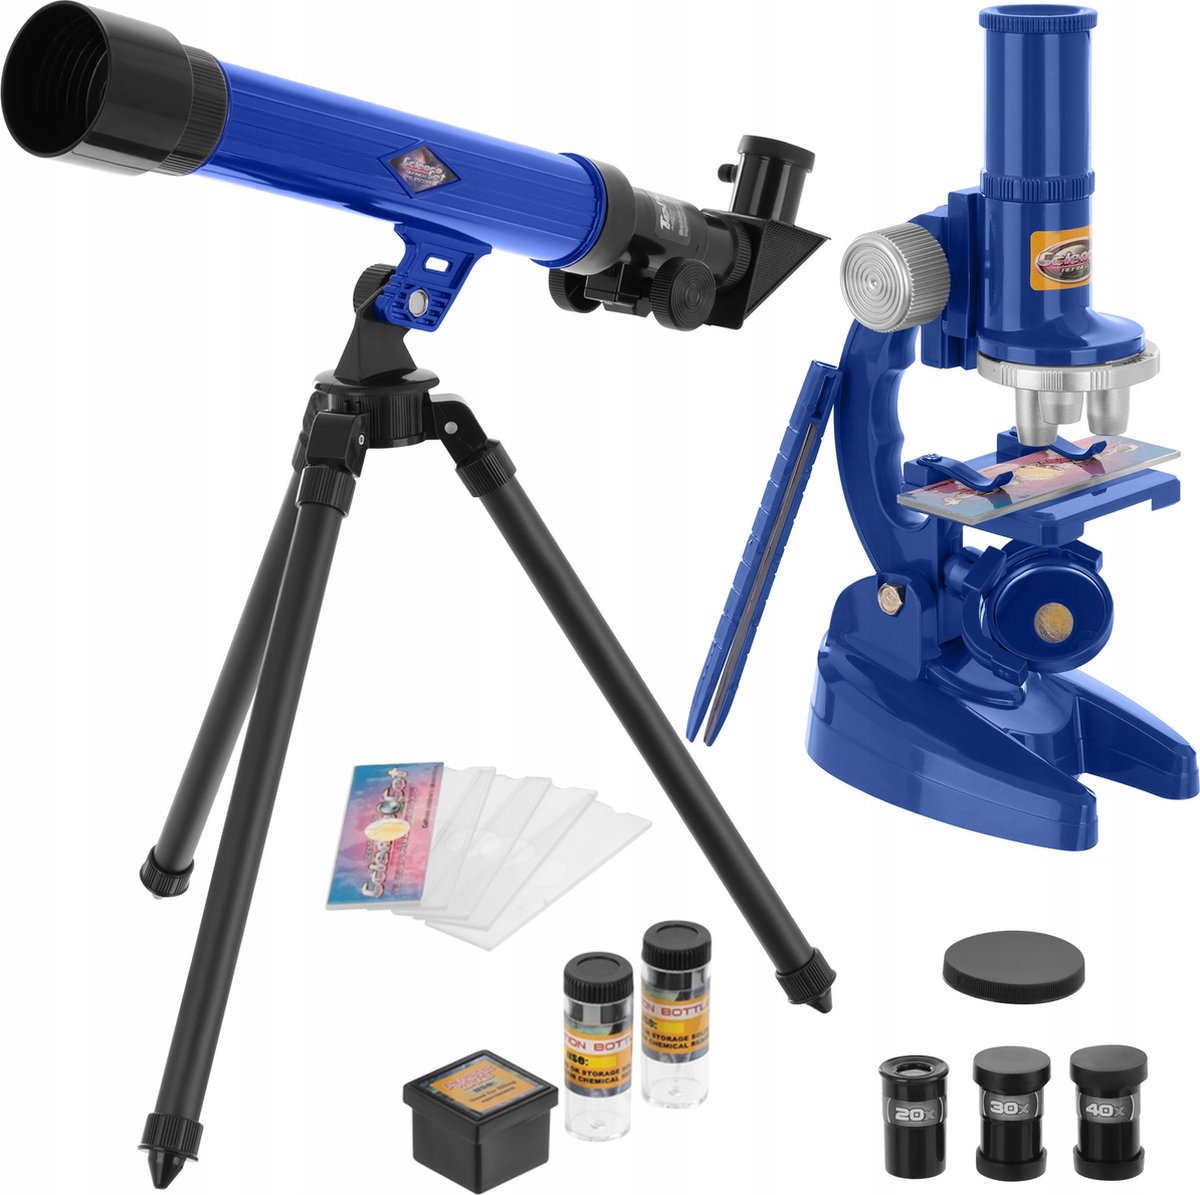 Swinn - Telescoop & Microscoop Kind - Kinderen - Speelgoed - Telescoop Kinderen - Microscoop Kind - Telescoop Kinderen Speelgoed - Jongens - Meisje - Leren en Spelen